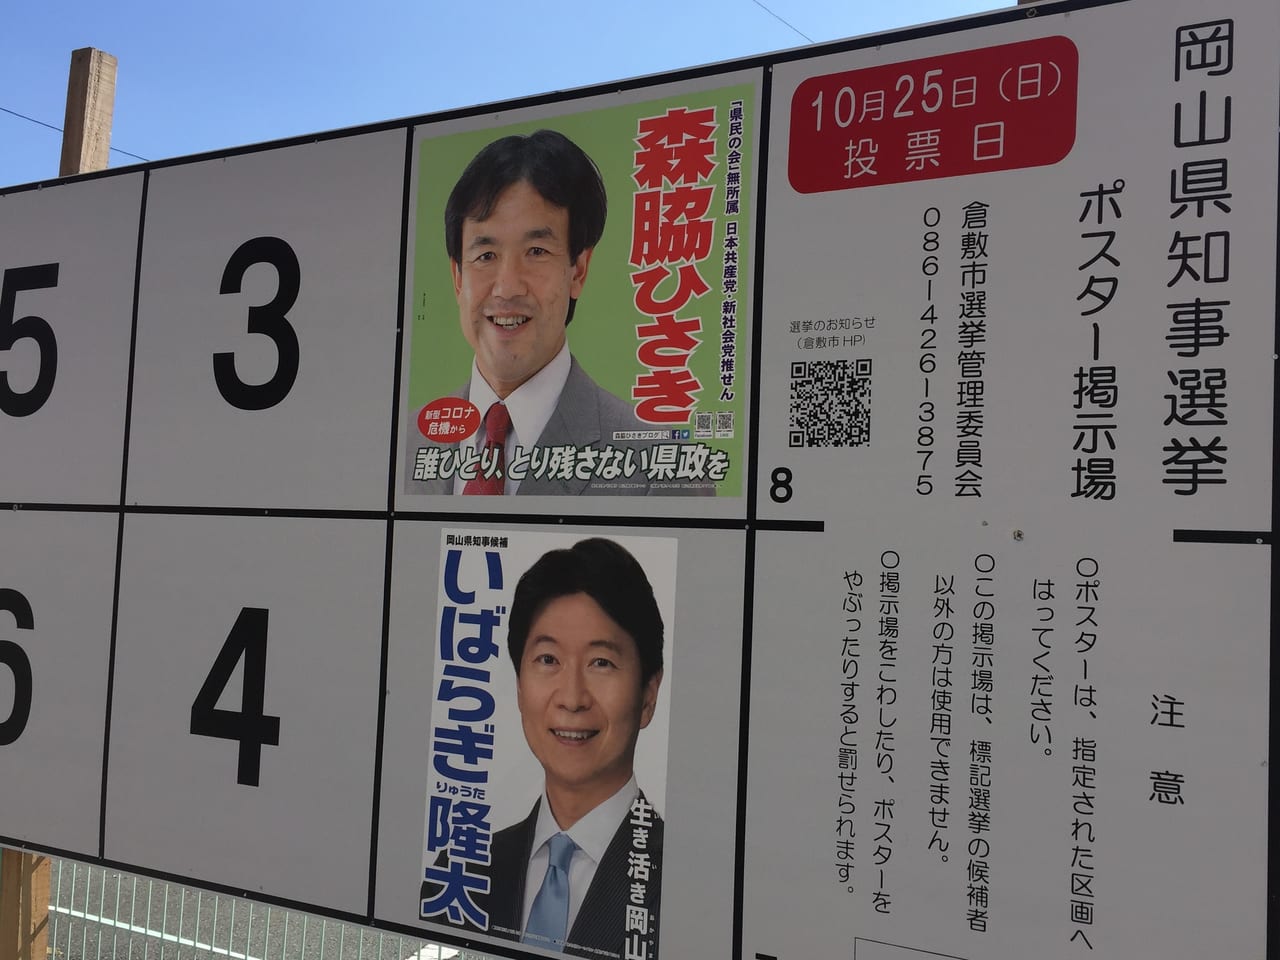 倉敷市 投票はお済みですか 岡山県知事選投票日は 10月25日 日曜日です 号外net 倉敷市